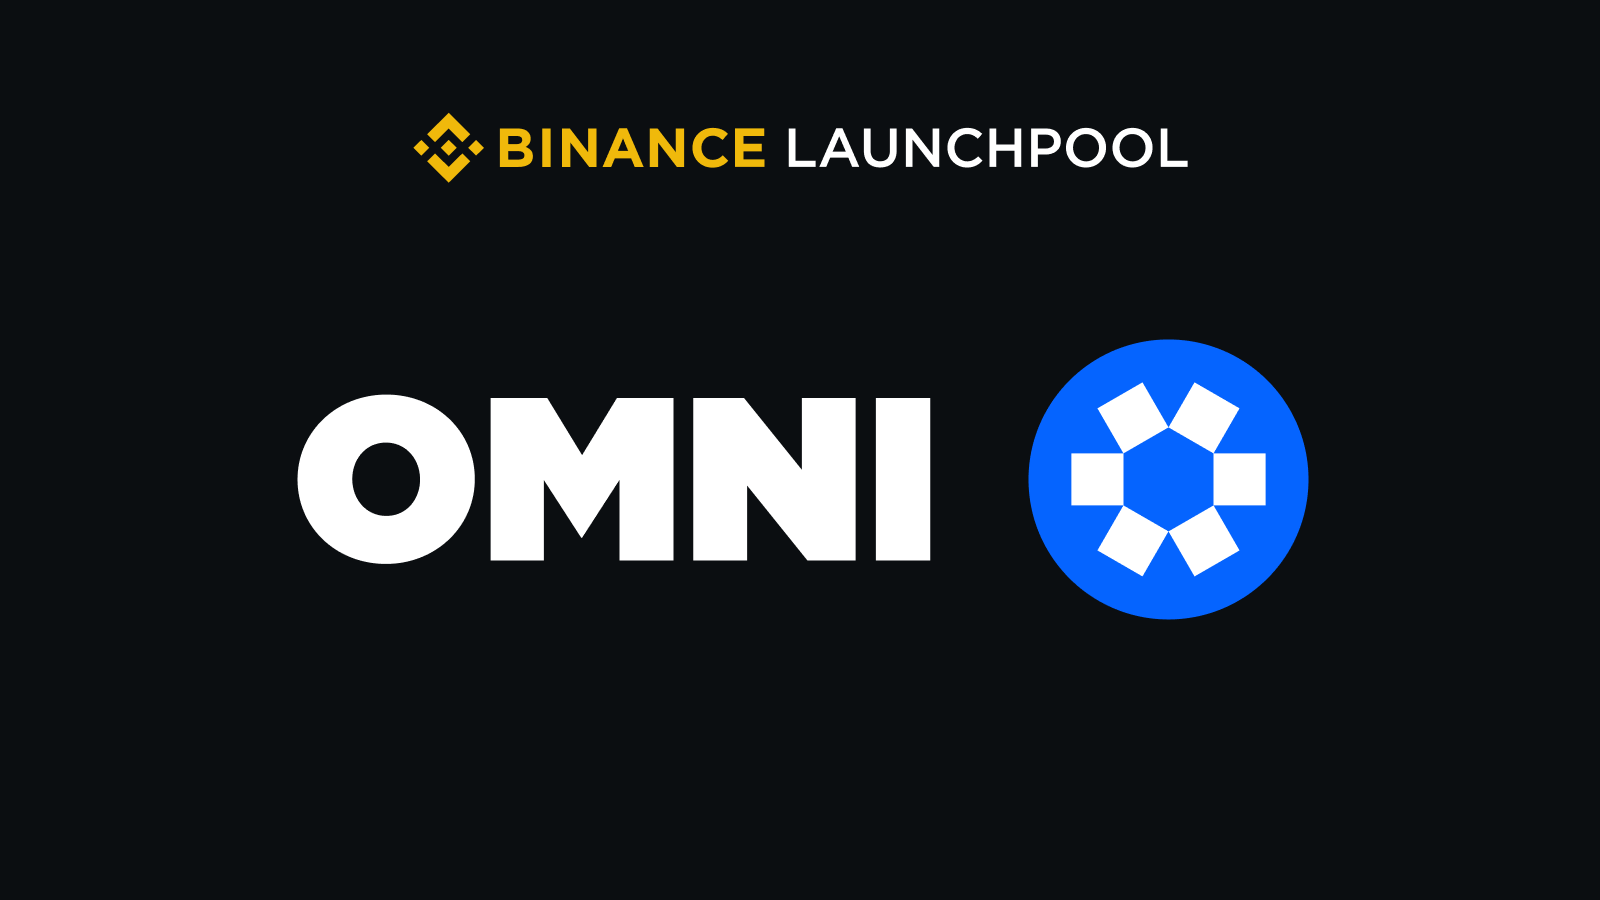 Binance thông báo dự án launchpool thứ 52 - Omni Network (OMNI)